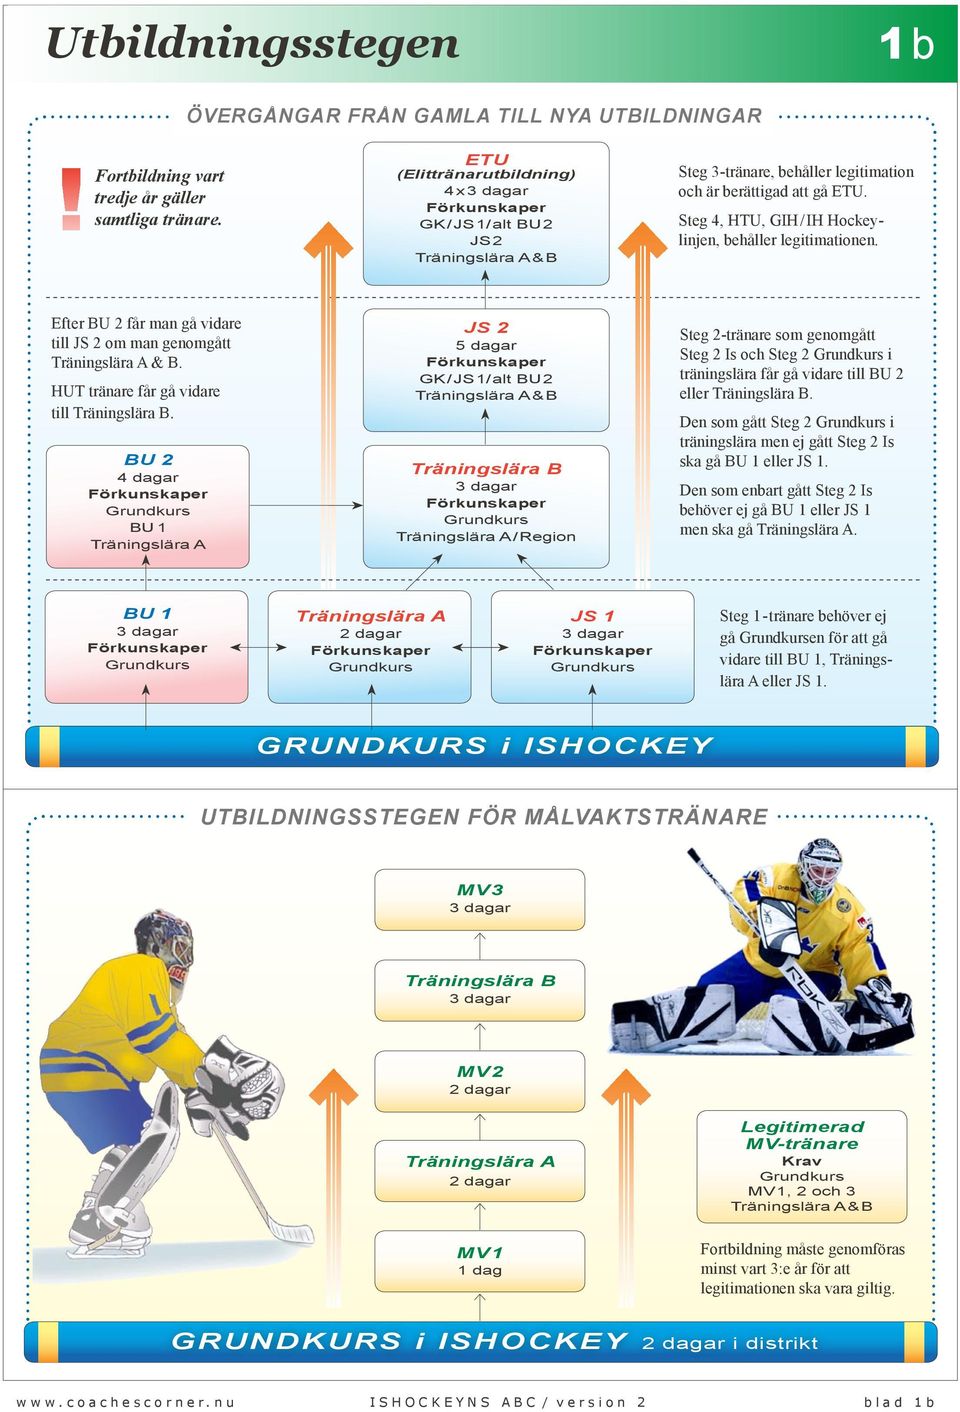 Steg 4, HTU, GIH/IH Hockeylinjen, behåller legitimationen. Efter BU 2 får man gå vidare till JS 2 om man genomgått Träningslära A & B. HUT tränare får gå vidare till Träningslära B.